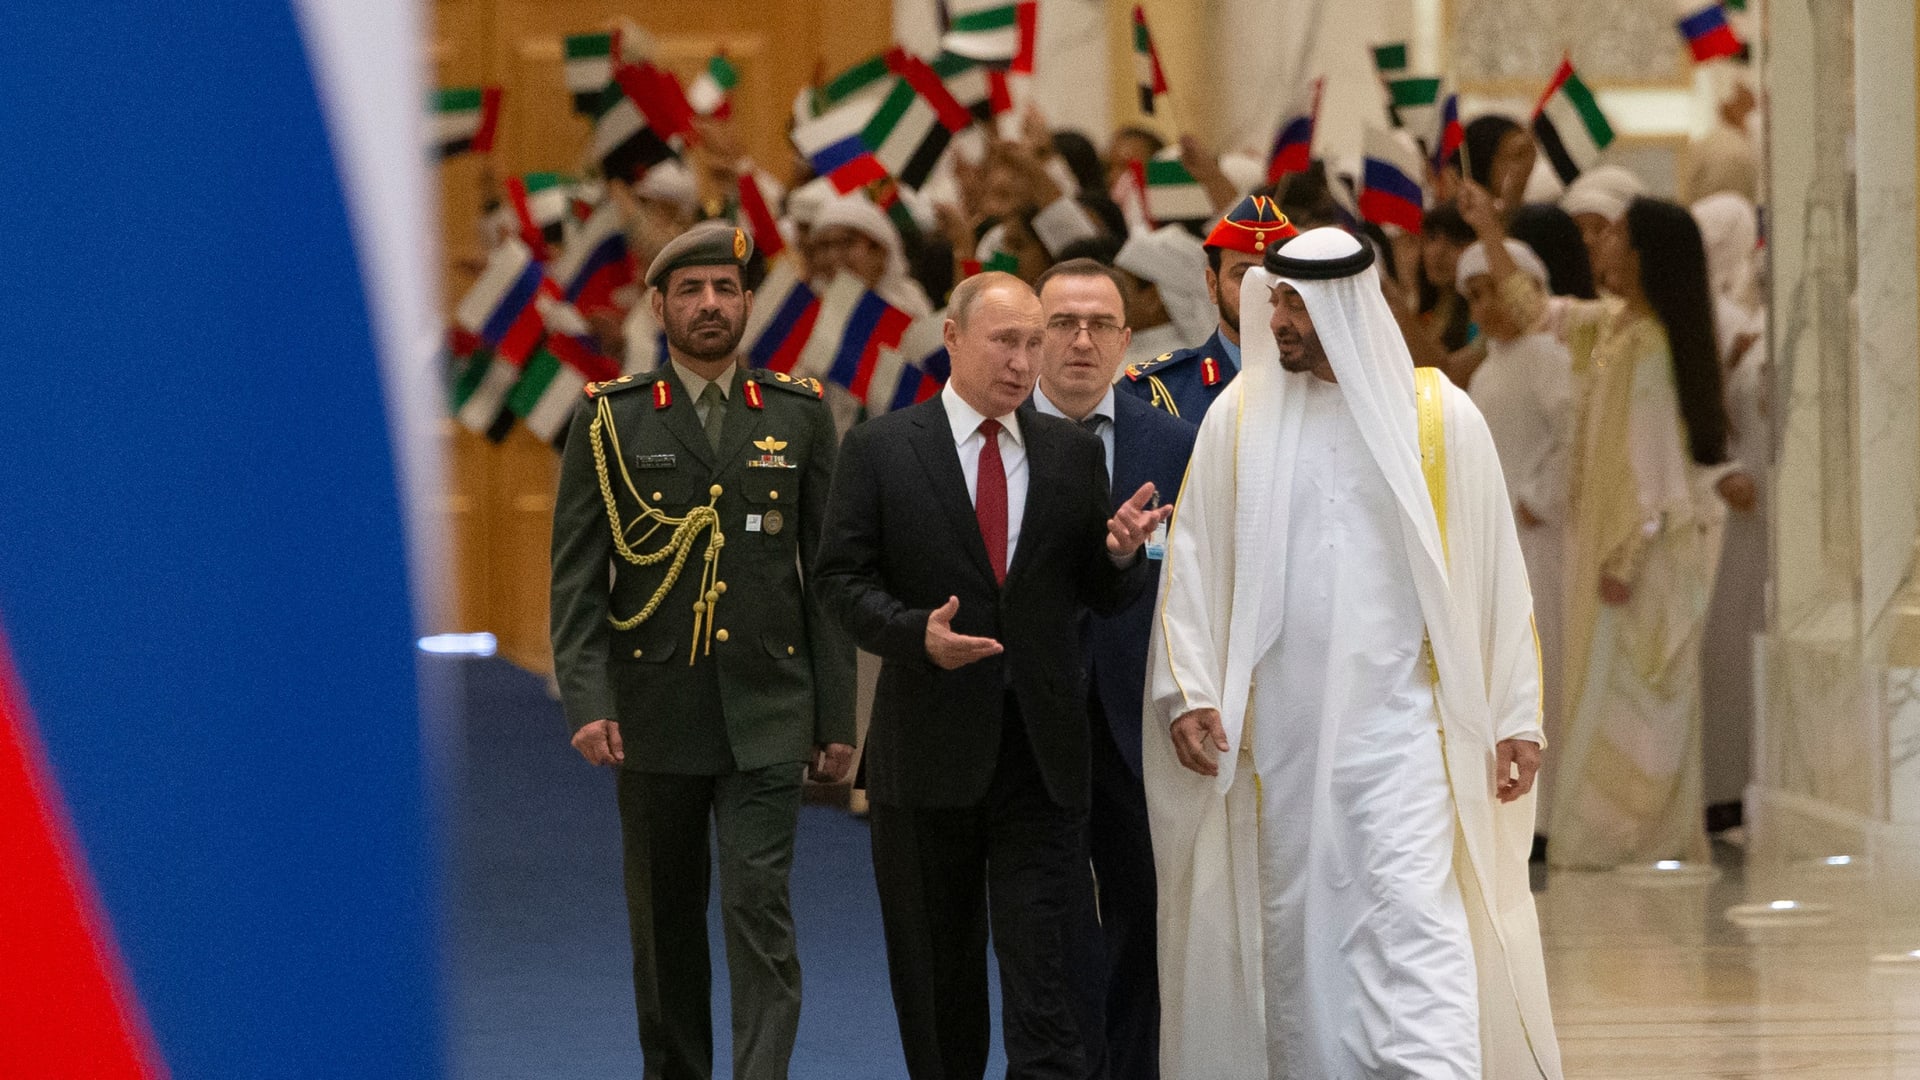 بن زايد يلتقي بوتين بعد قرار خفض إنتاج النفط